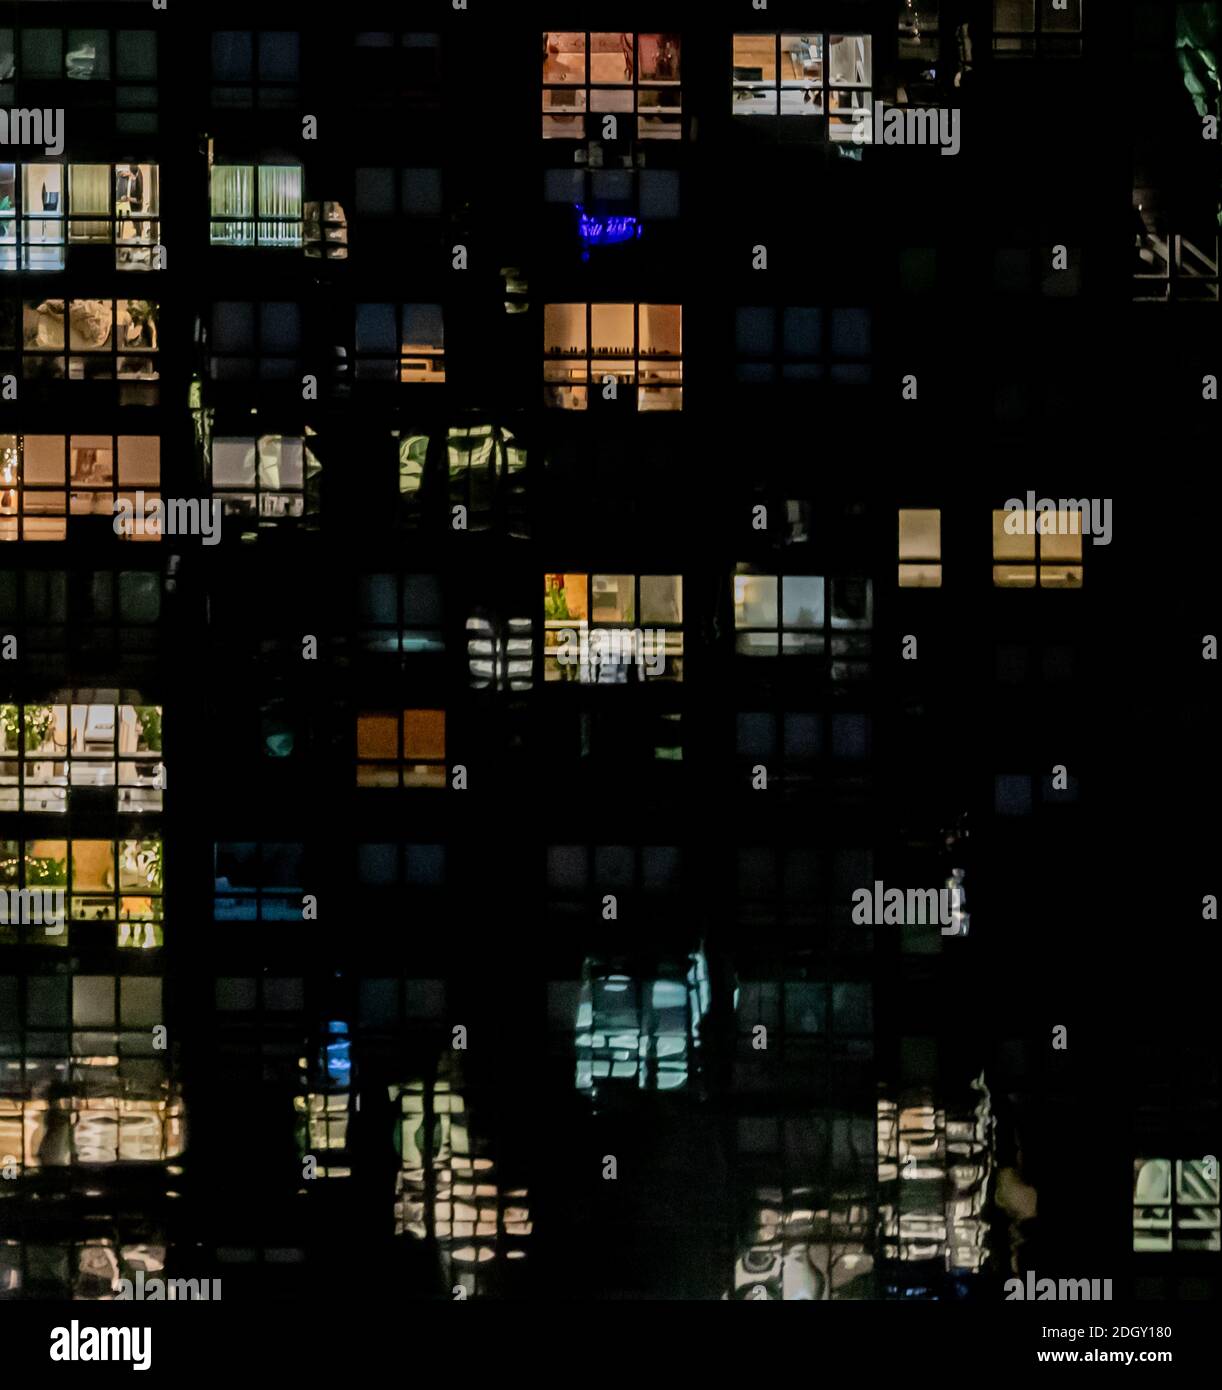 Image détaillée de plusieurs étages d'un immeuble d'appartements de New York la nuit Banque D'Images